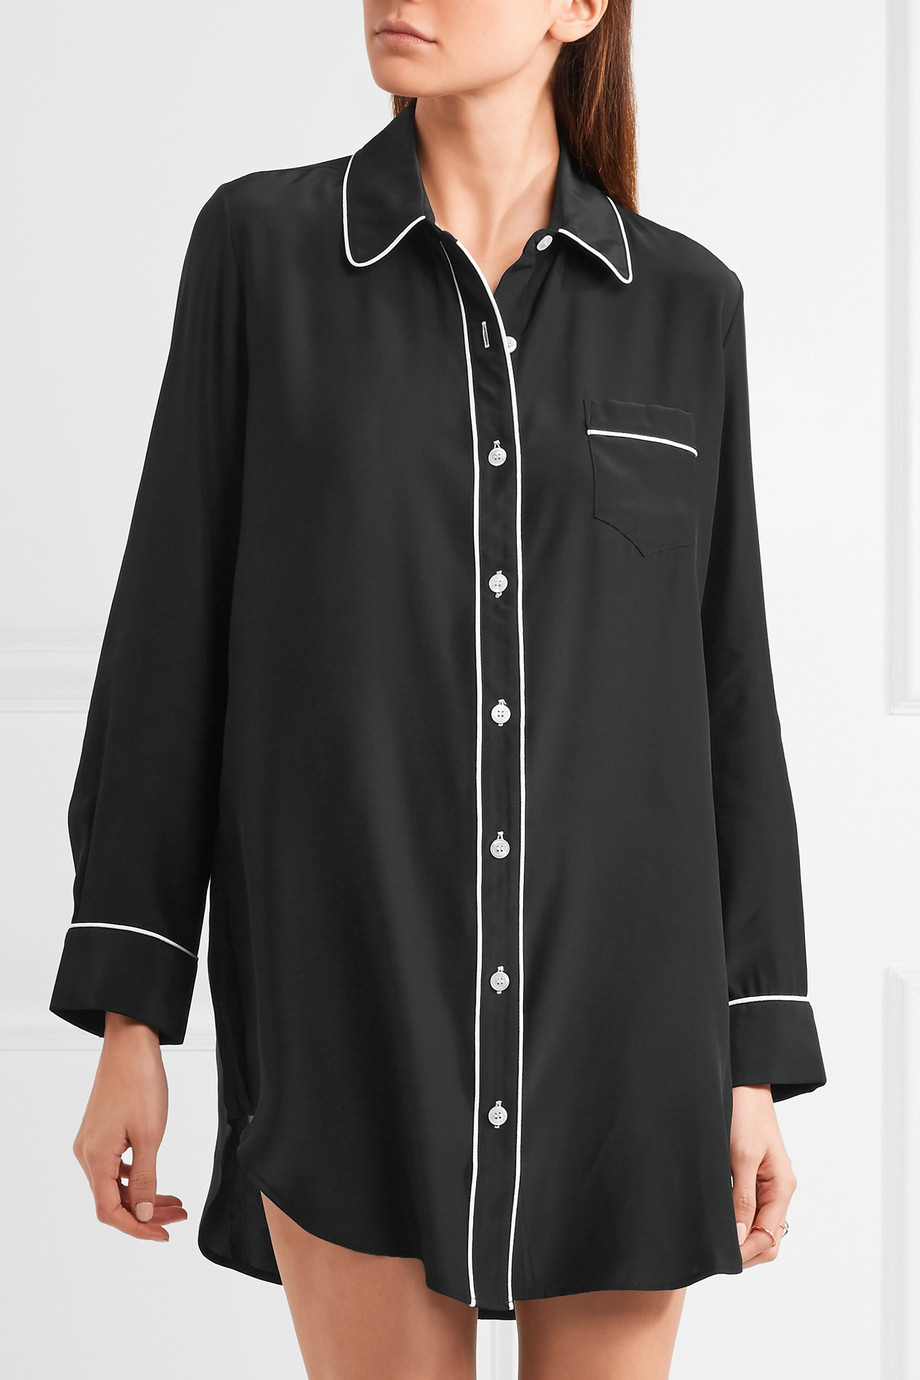 silk-satin-night-shirt-piping-pajamas